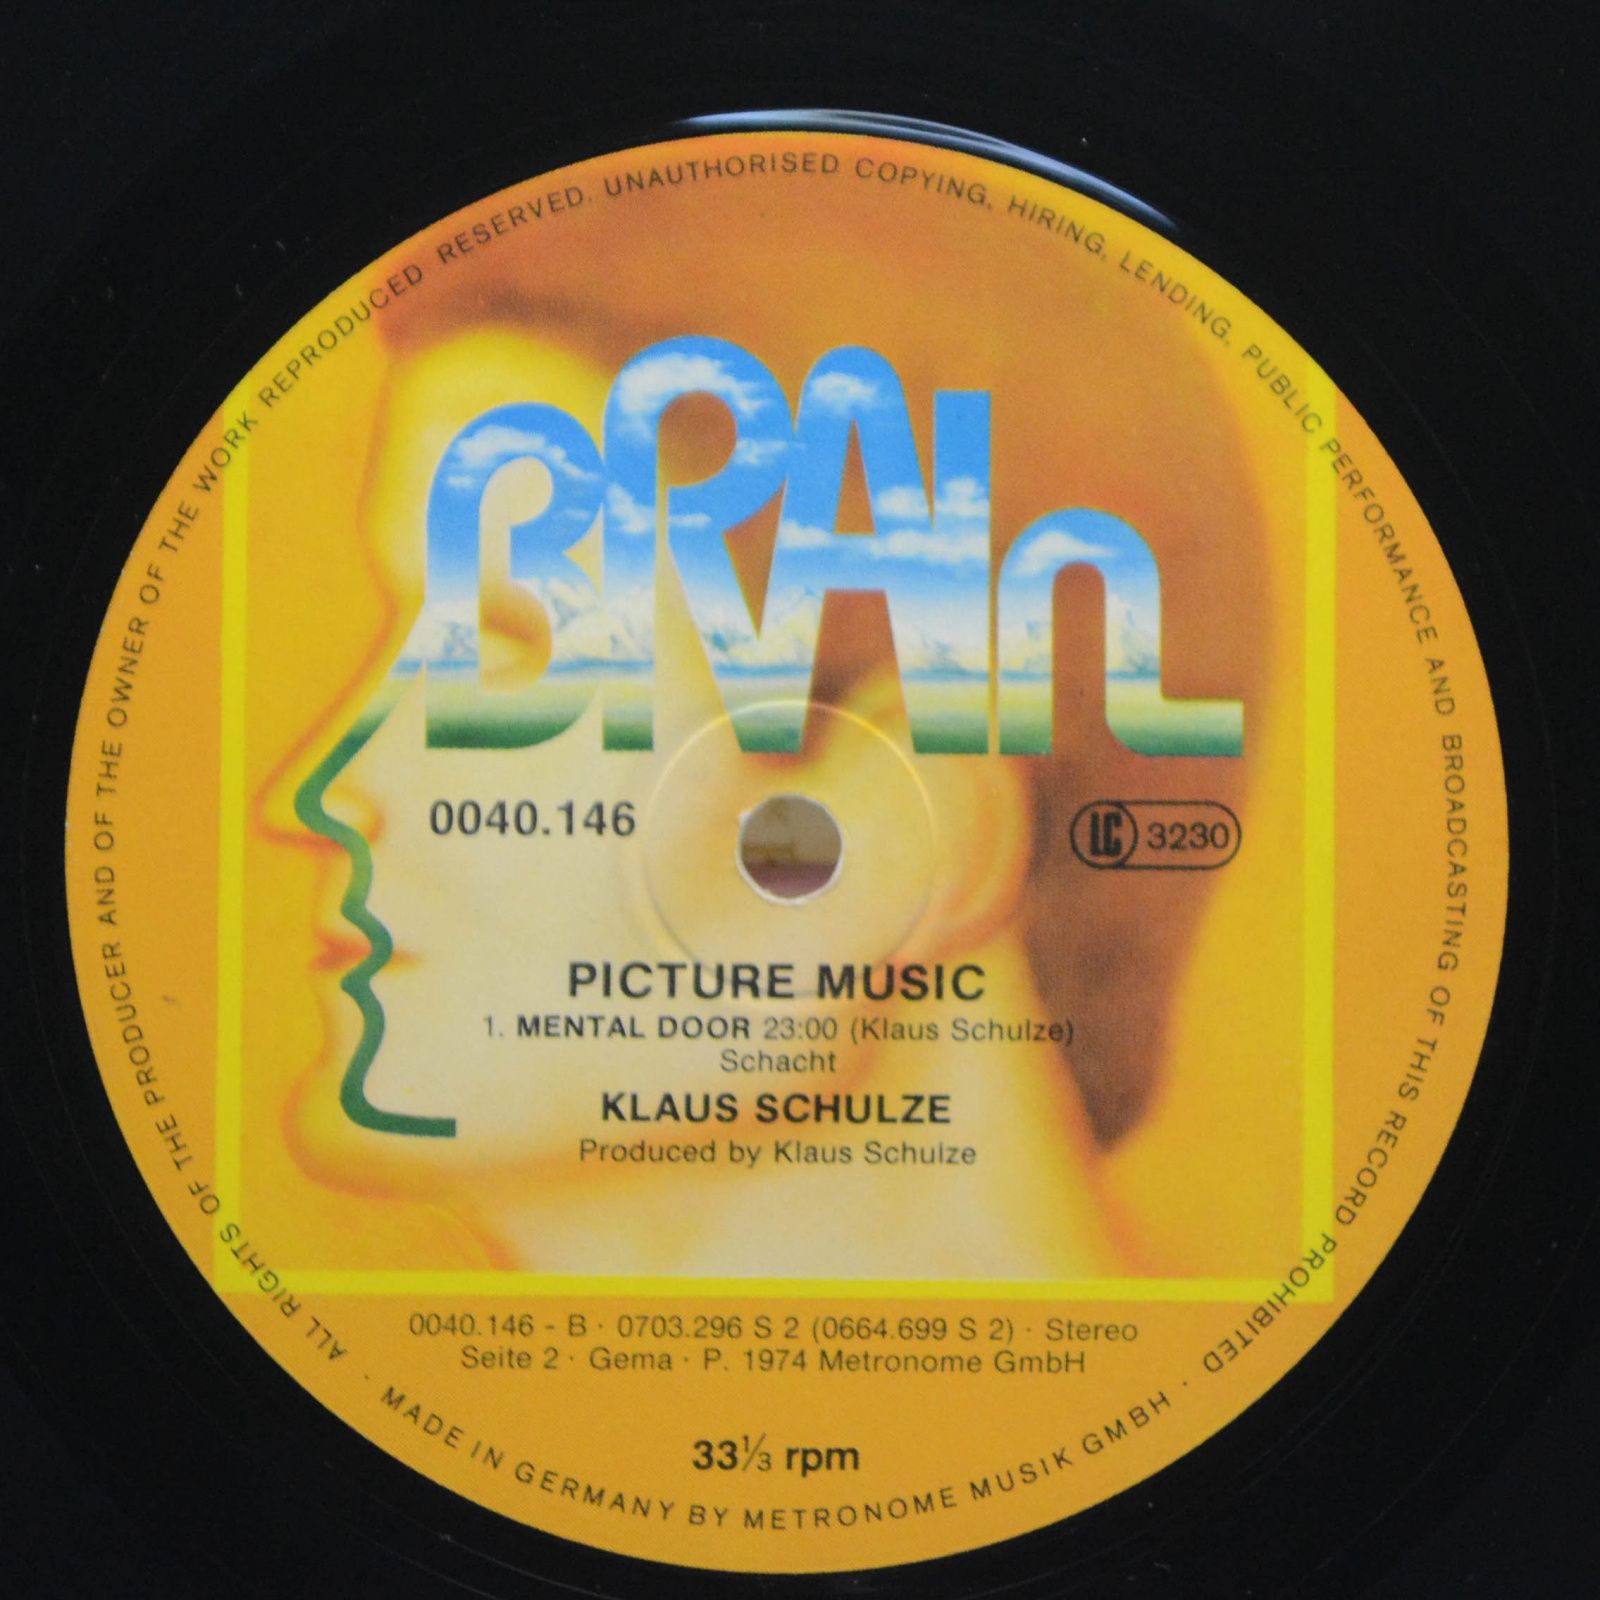 Klaus Schulze — Picture Music, 1979